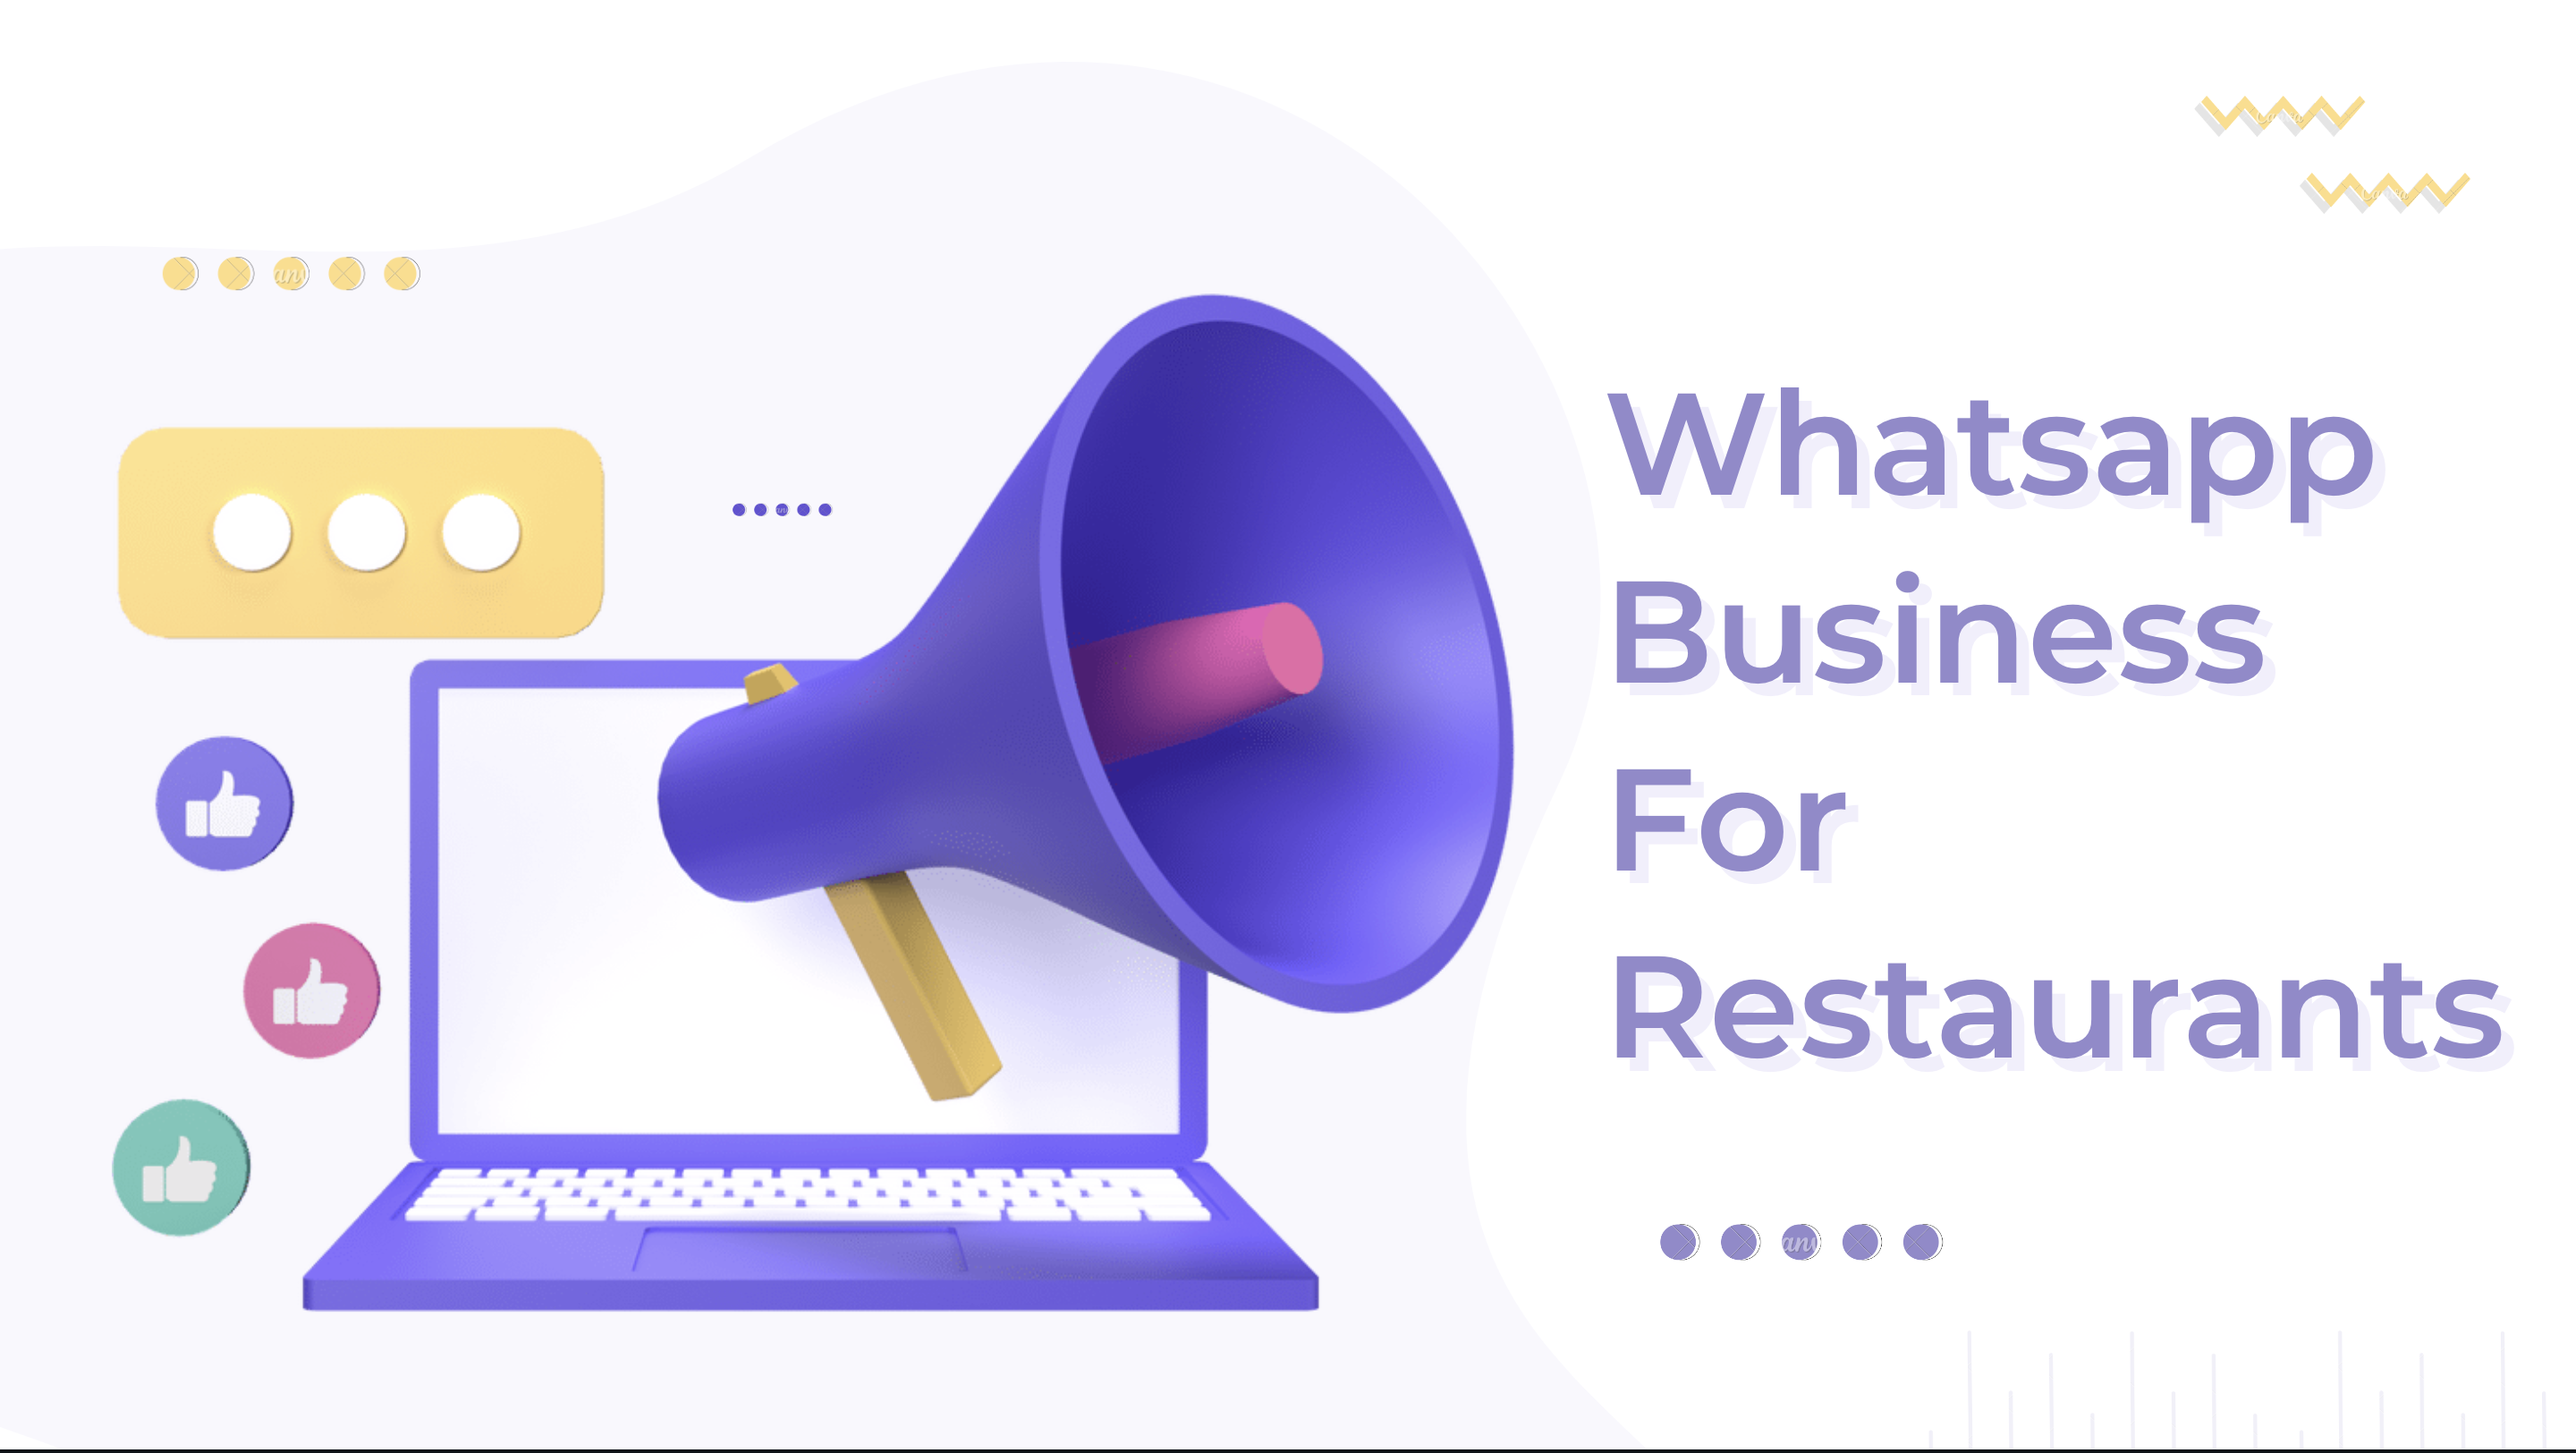 How can WhatsApp Business help restaurants?